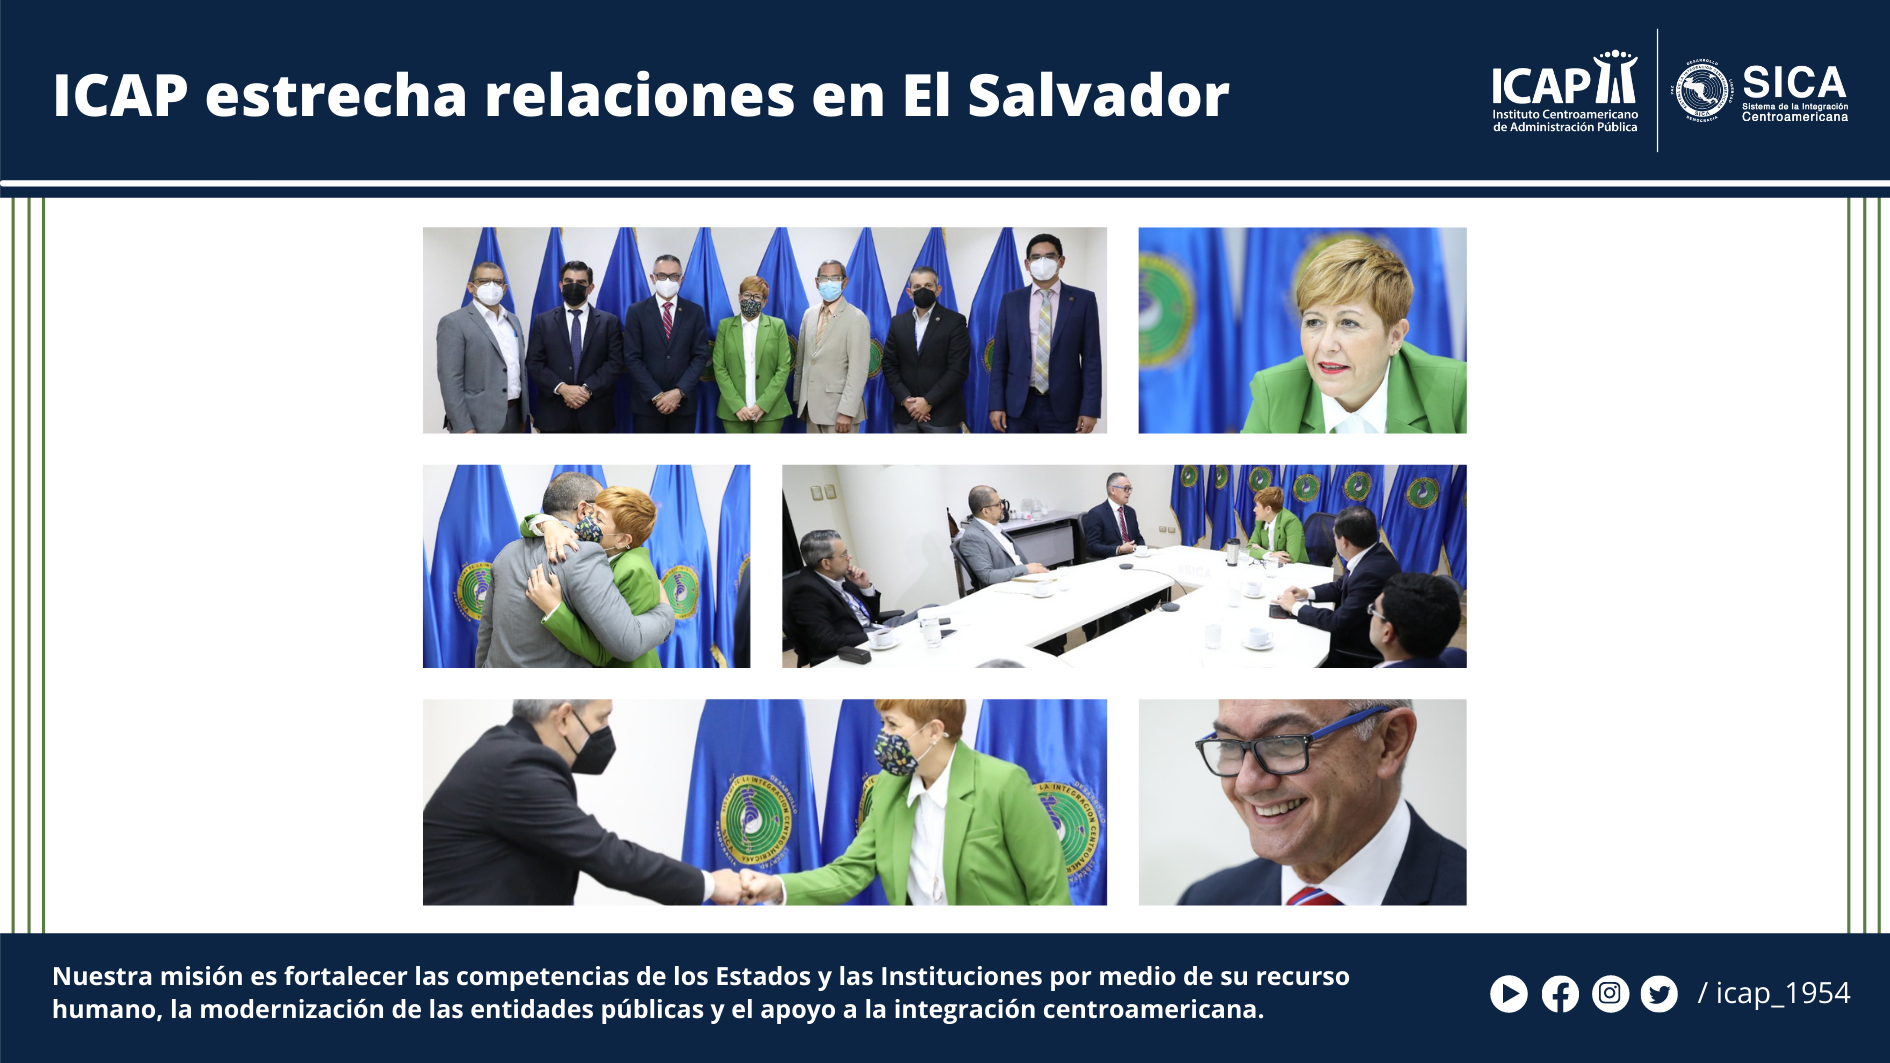 ICAP estrecha relaciones en El Salvador